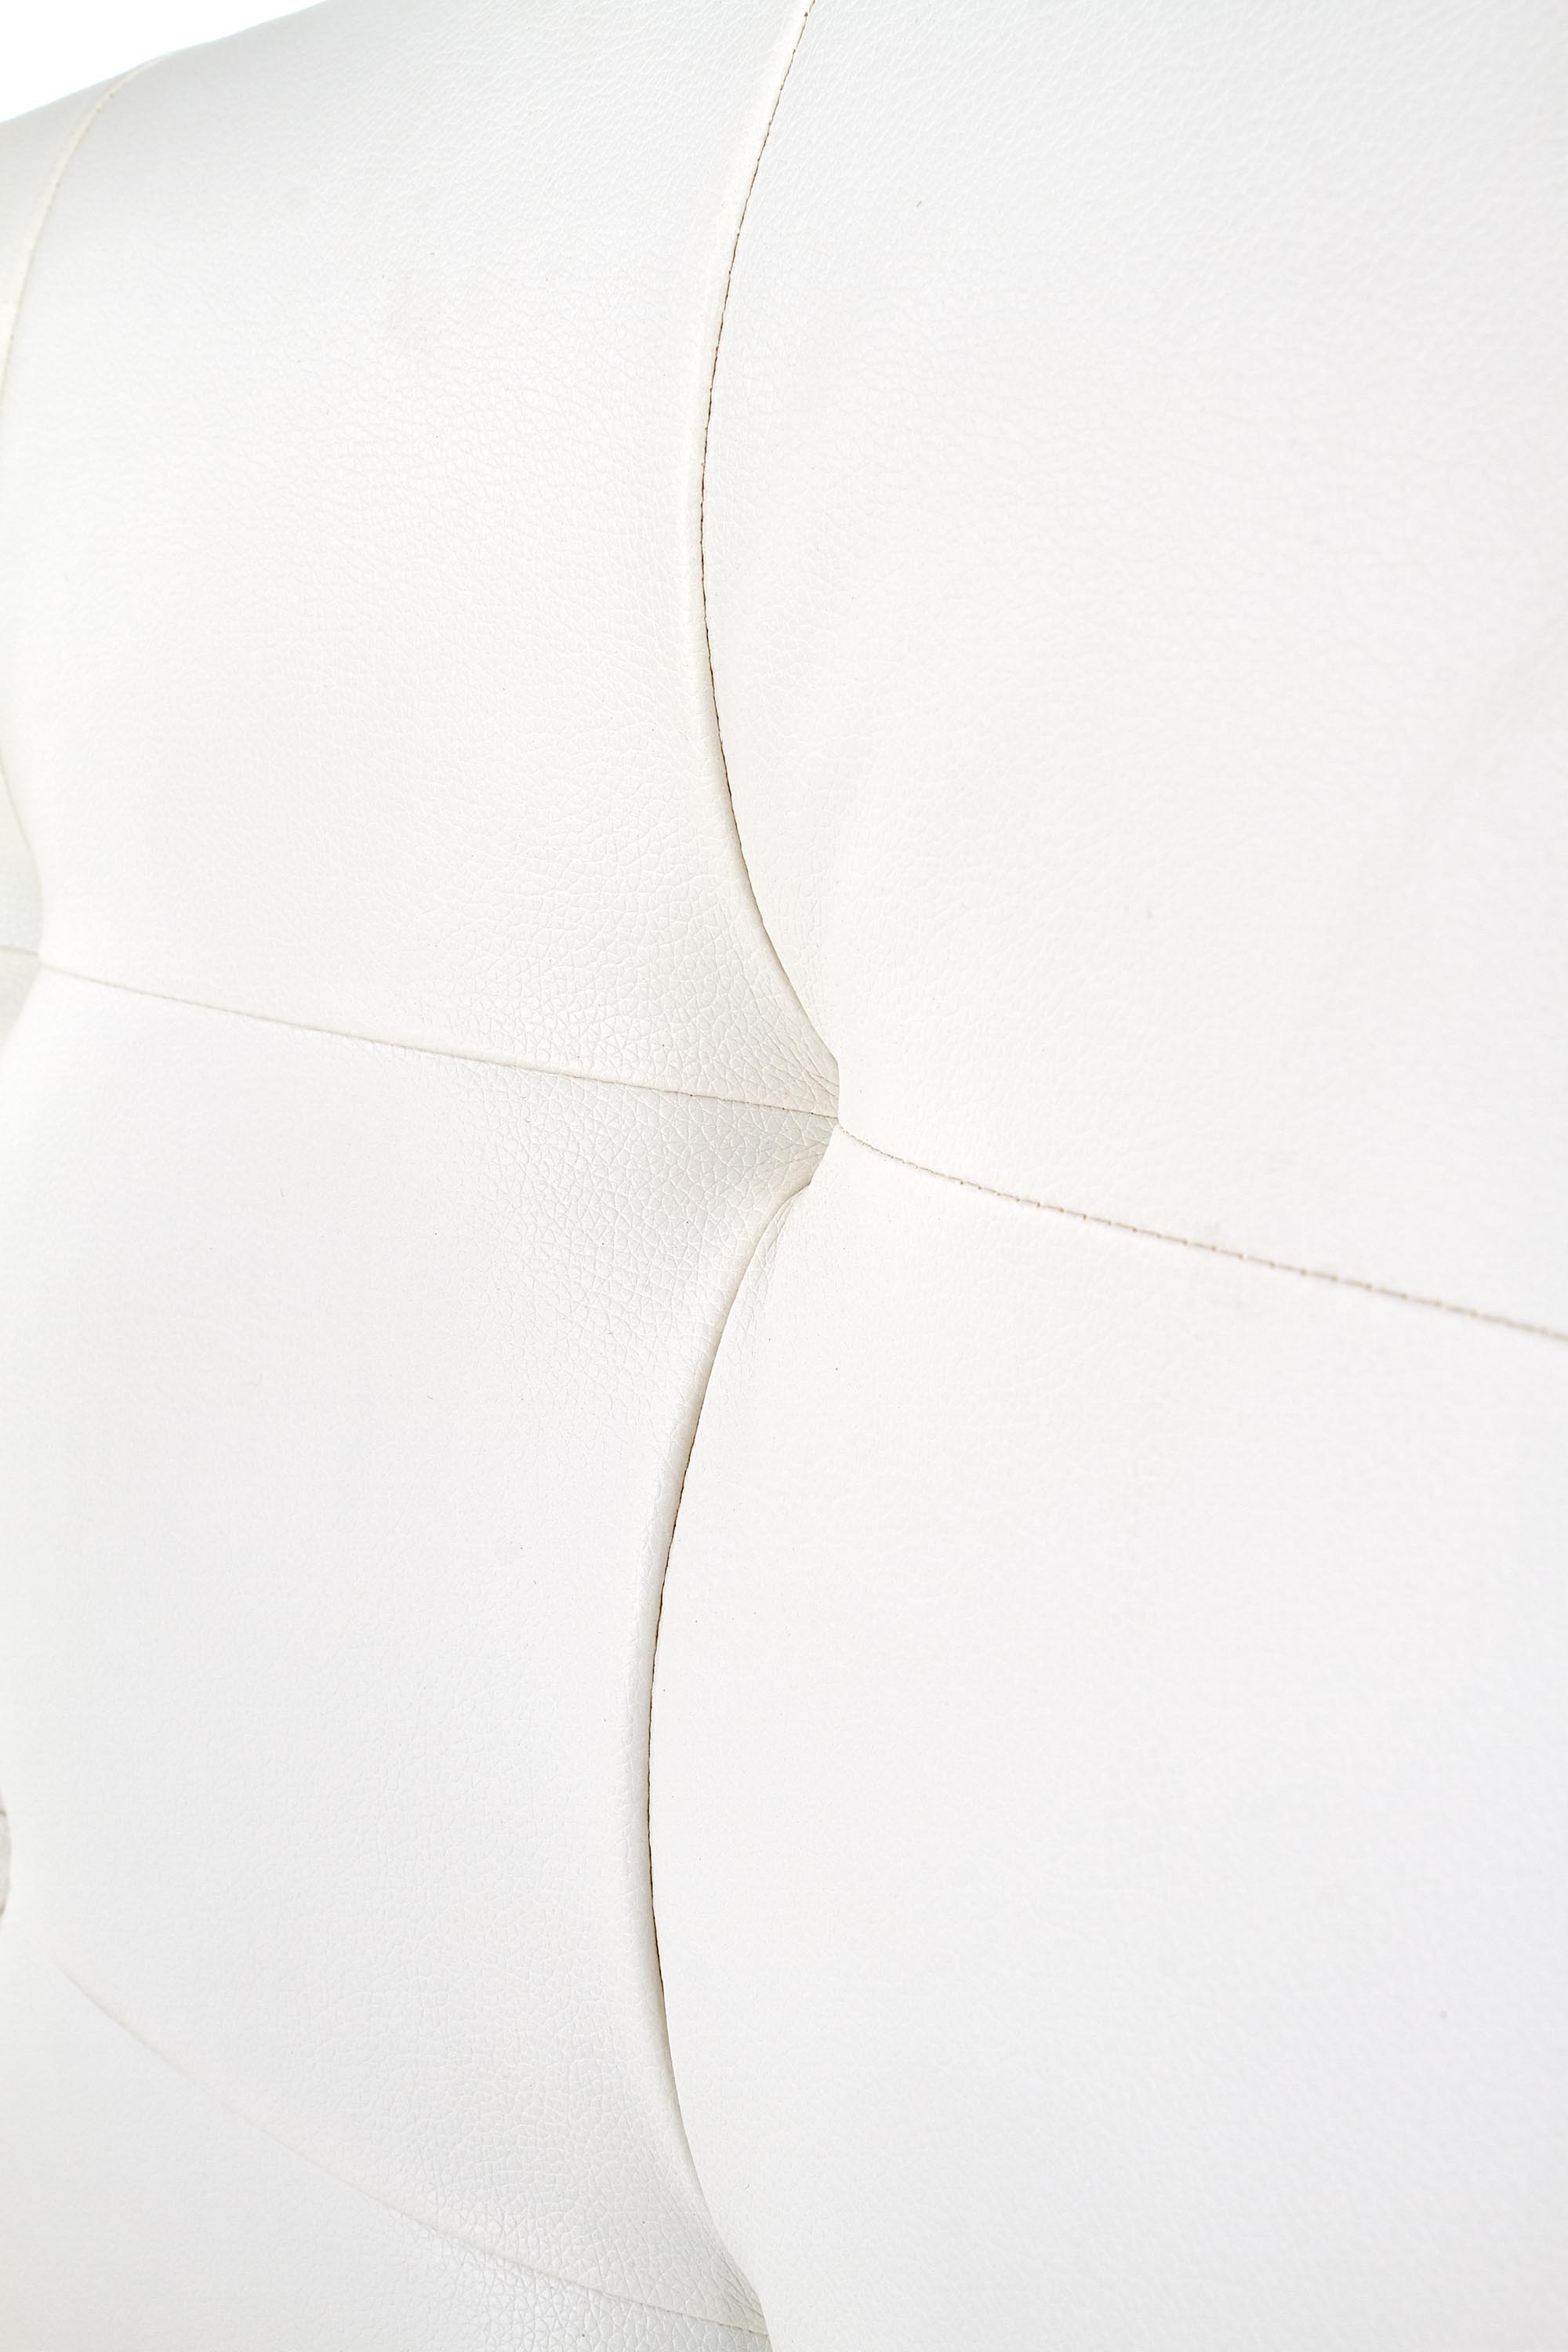 Łóżko tapicerowane Samara 160x200 - biały Łóżko tapicerowane samara 160x200 - biały